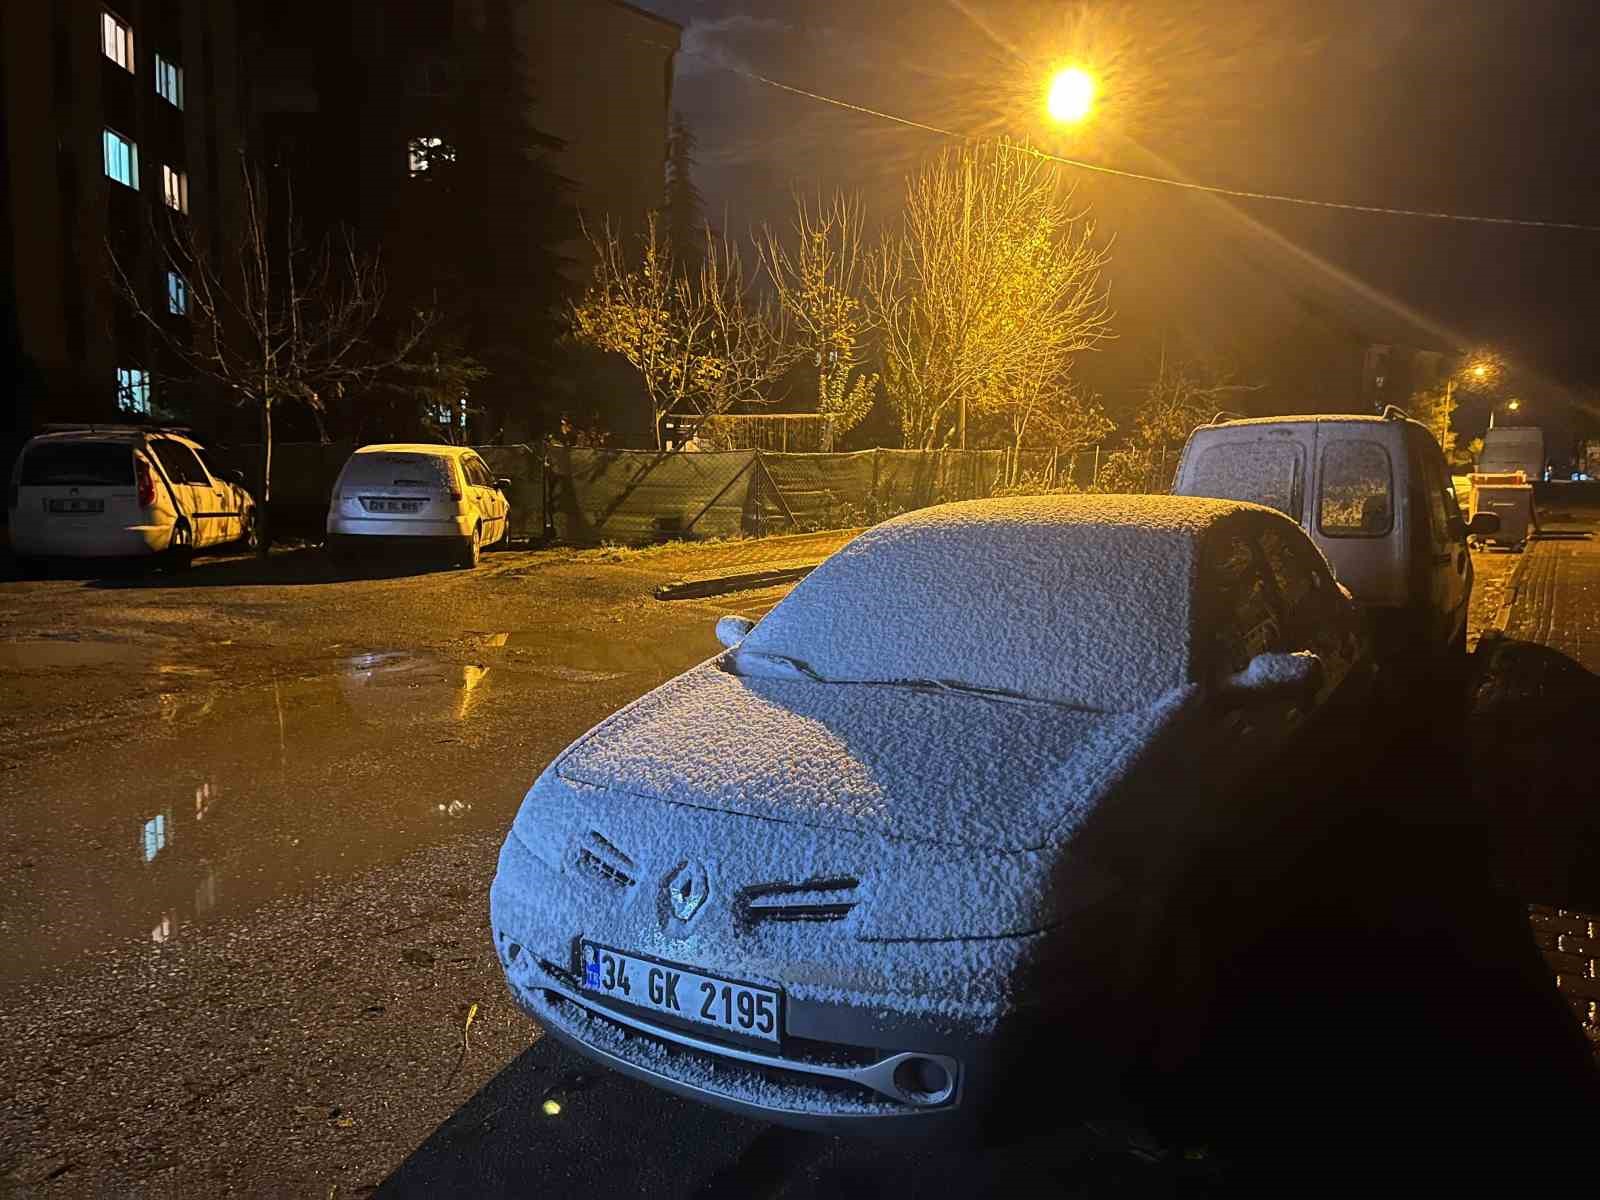 Eskişehir il merkezine mevsimin ilk karı düştü